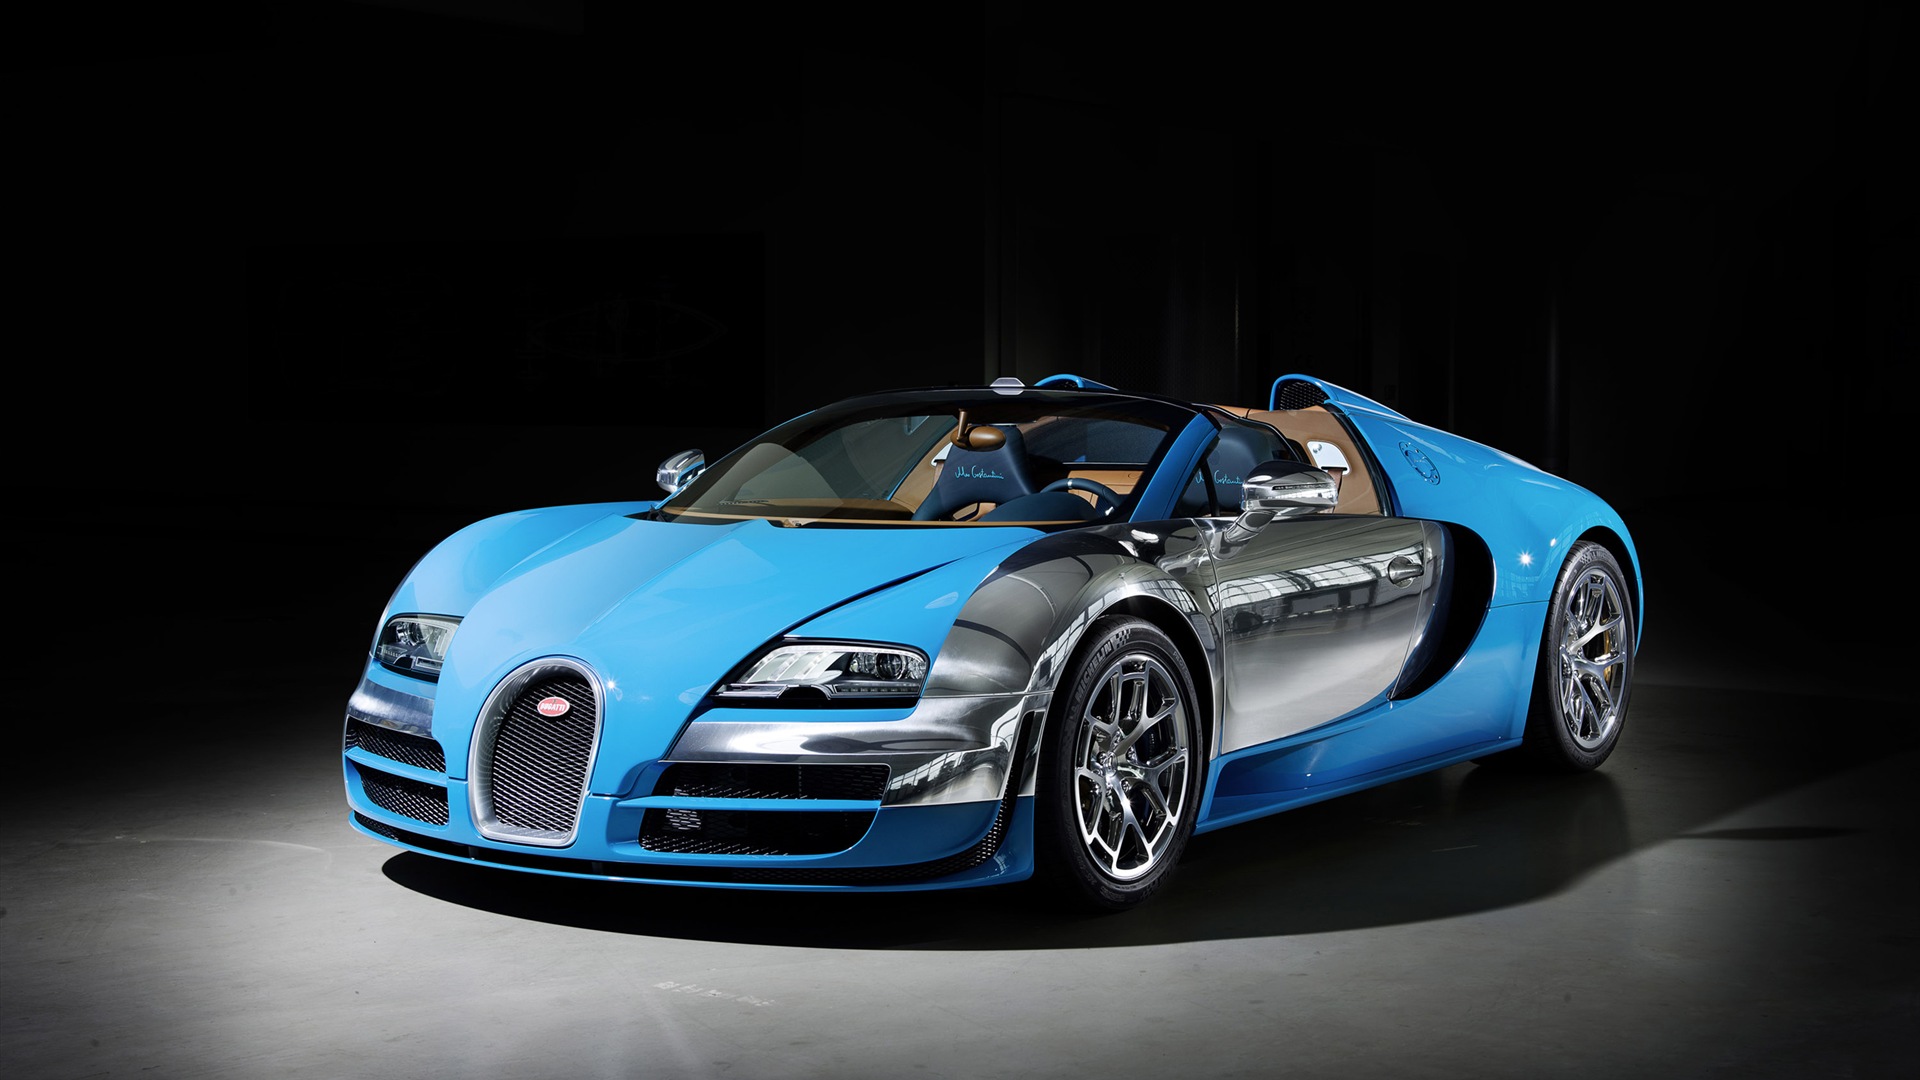 2013 Bugatti Veyron 16.4 Grand Sport Vitesse supercar fondos de pantalla de alta definición #1 - 1920x1080